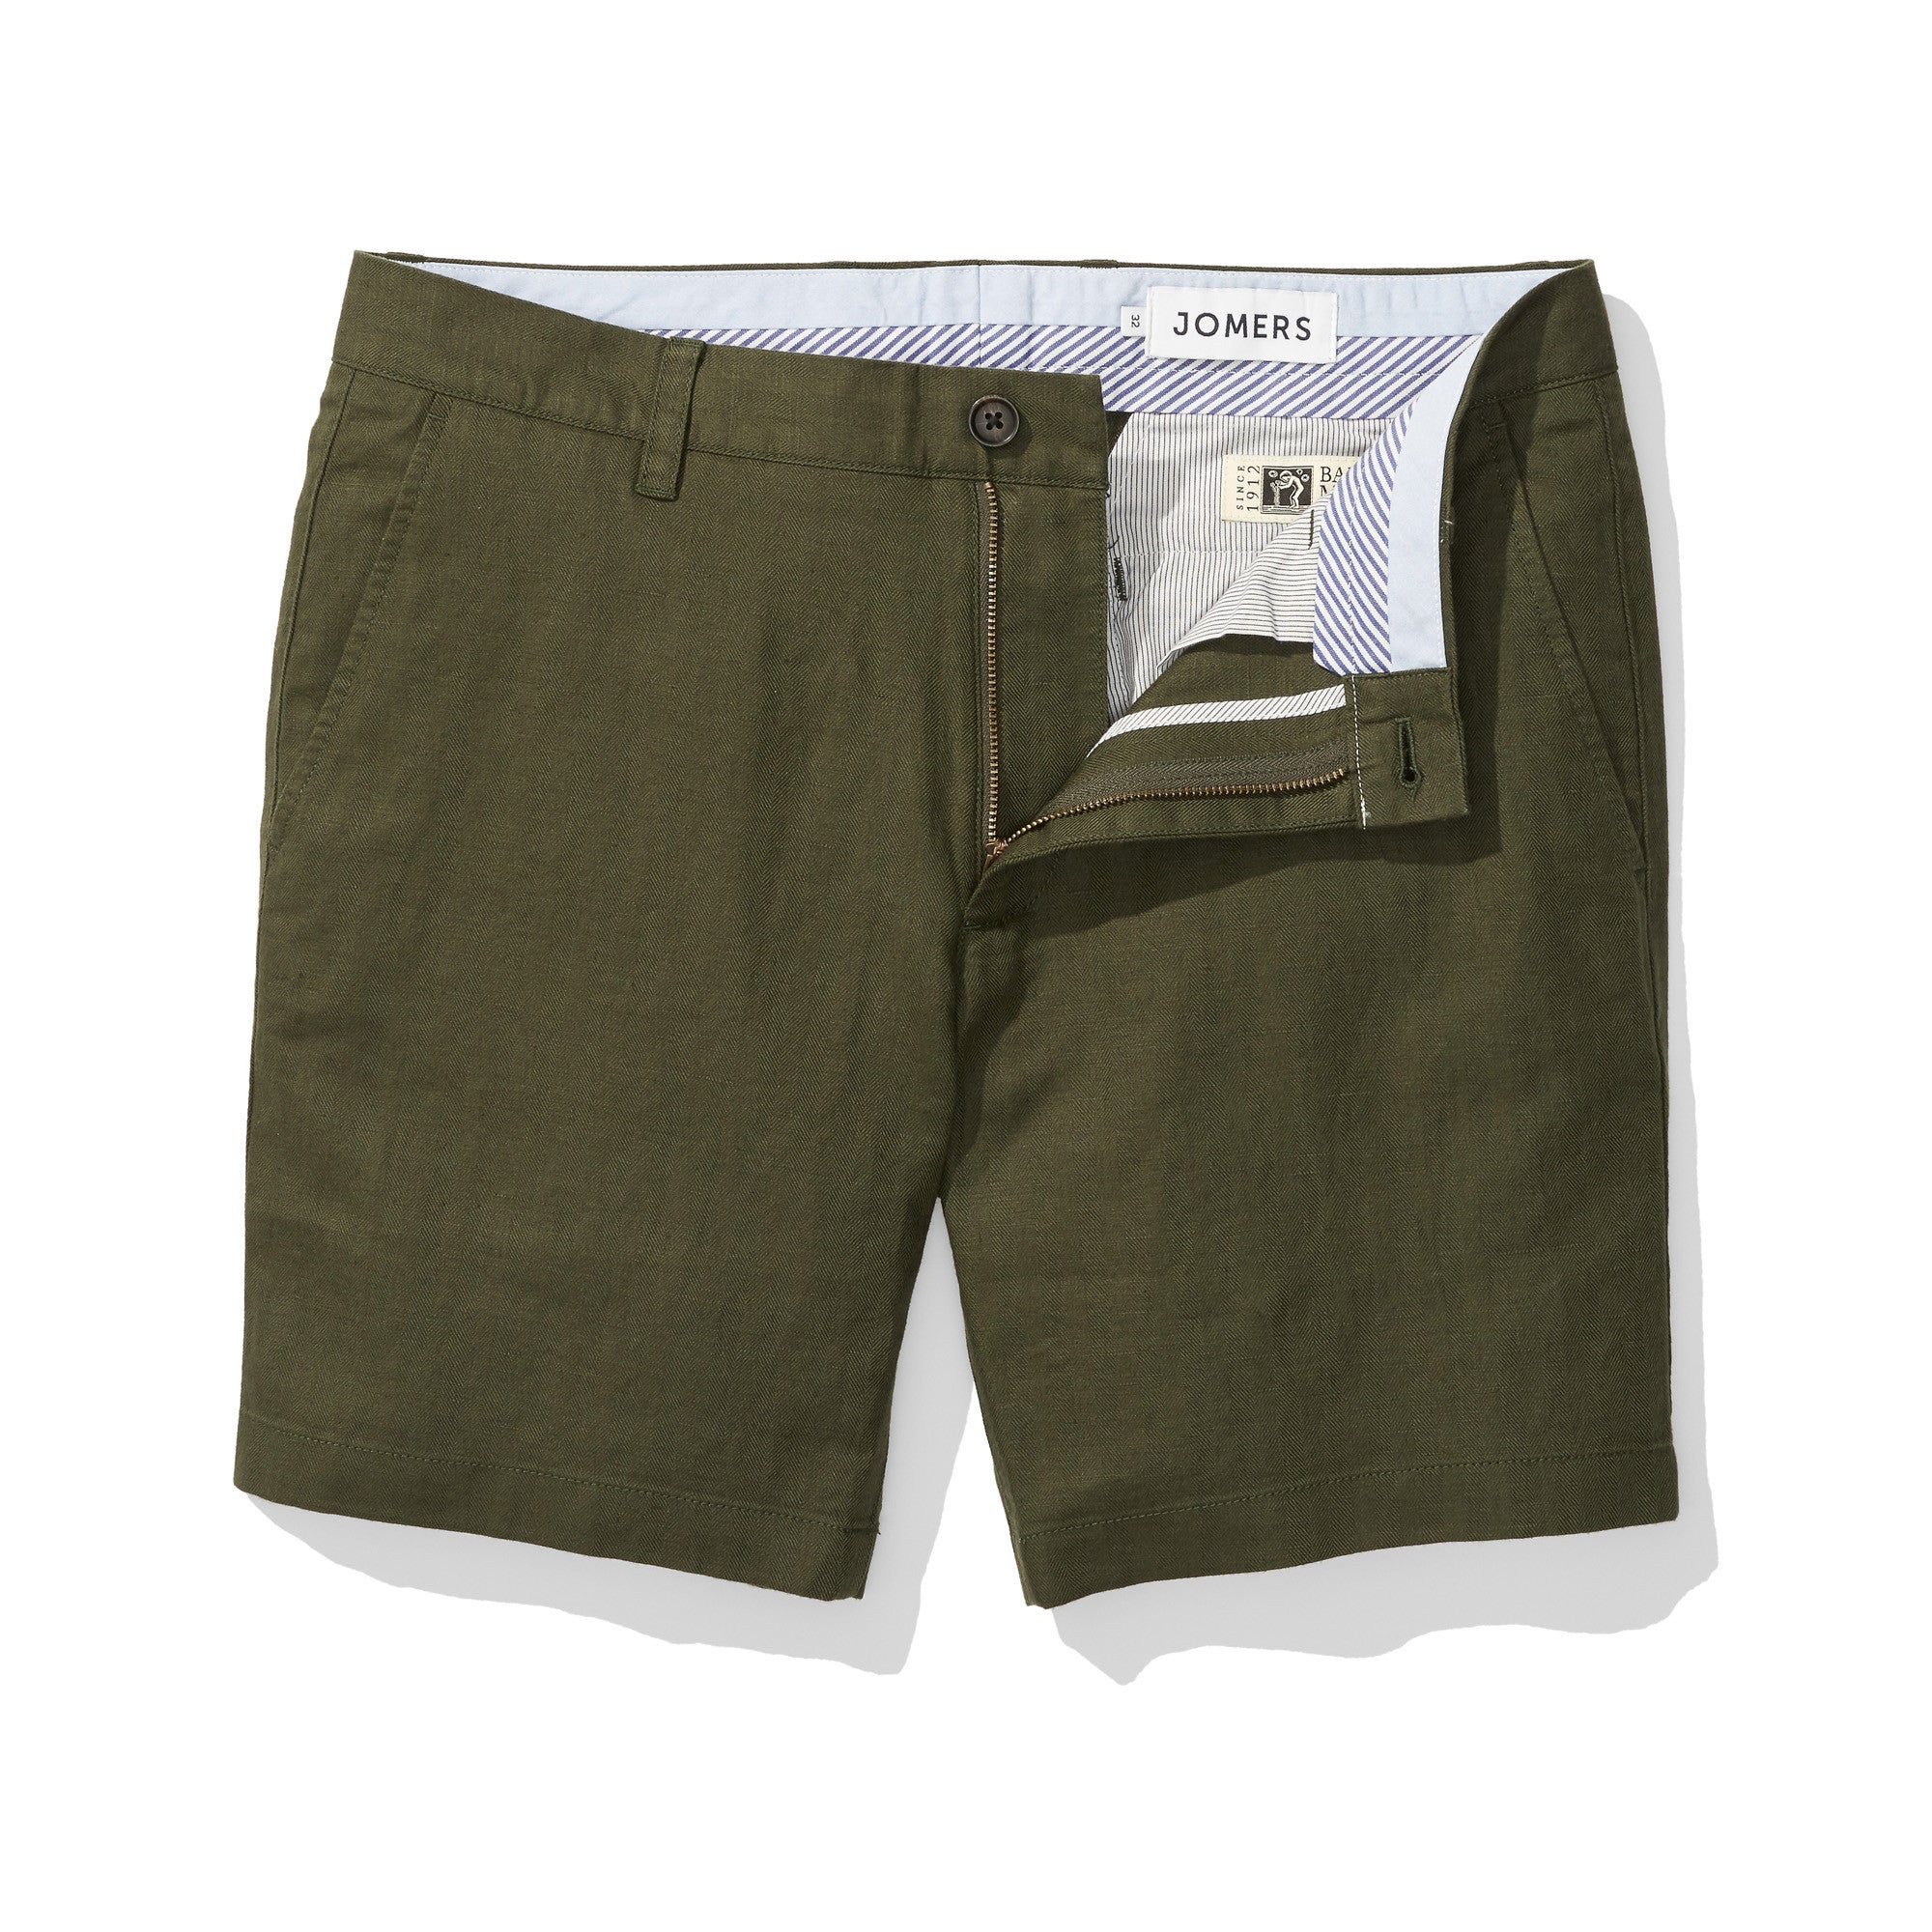 Barrow - Forest Green Herringbone Baird McNutt Linen Shorts - Jomers